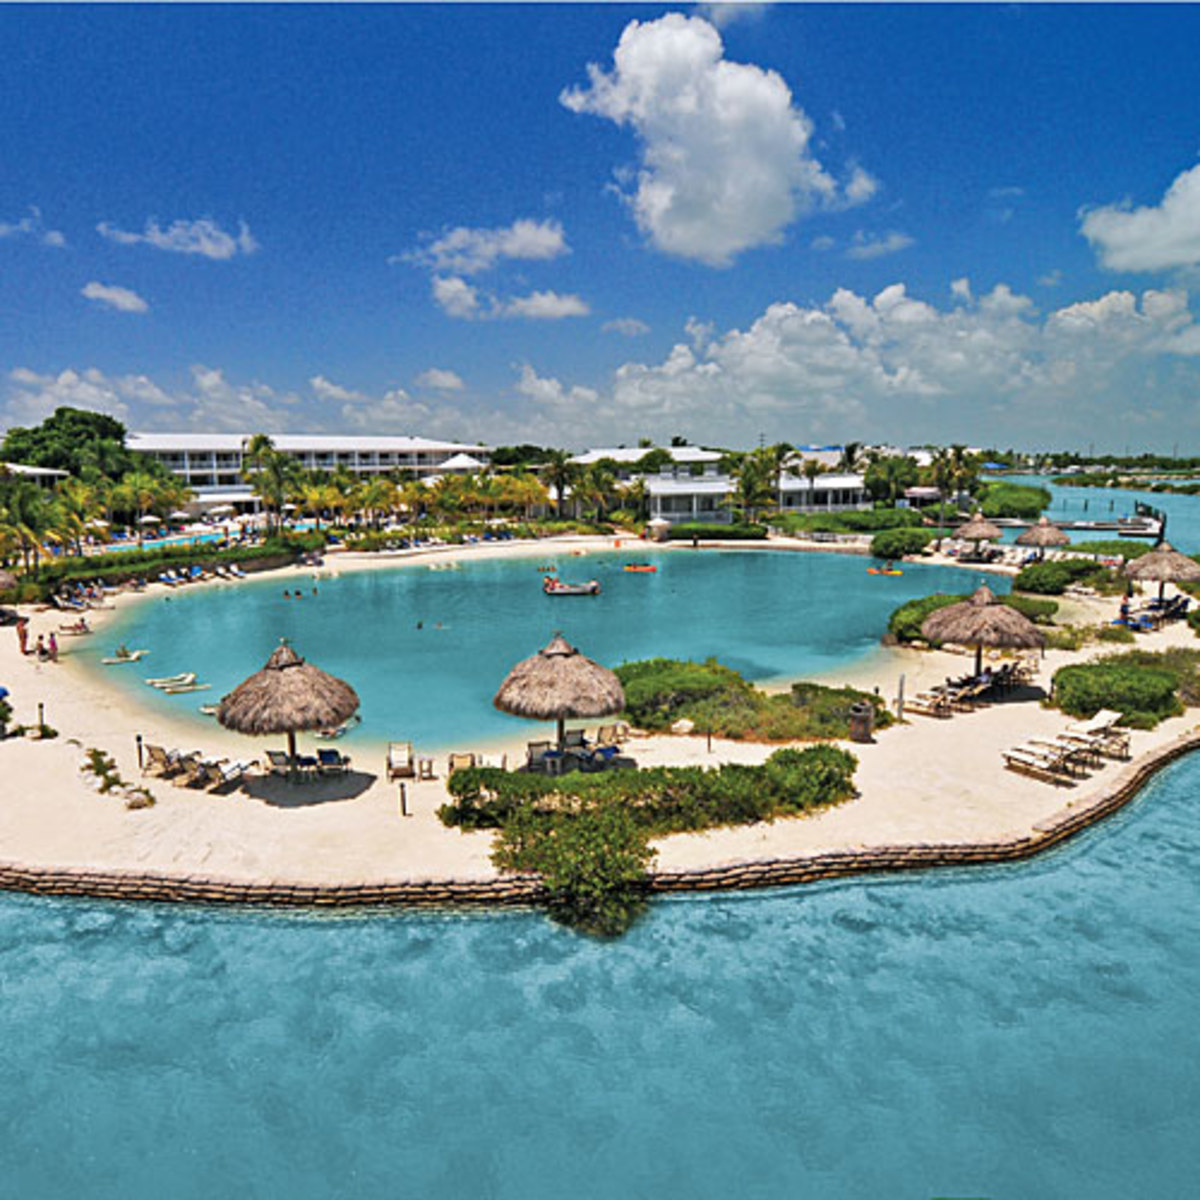 Hawks Cay resort in Key West, Florida.